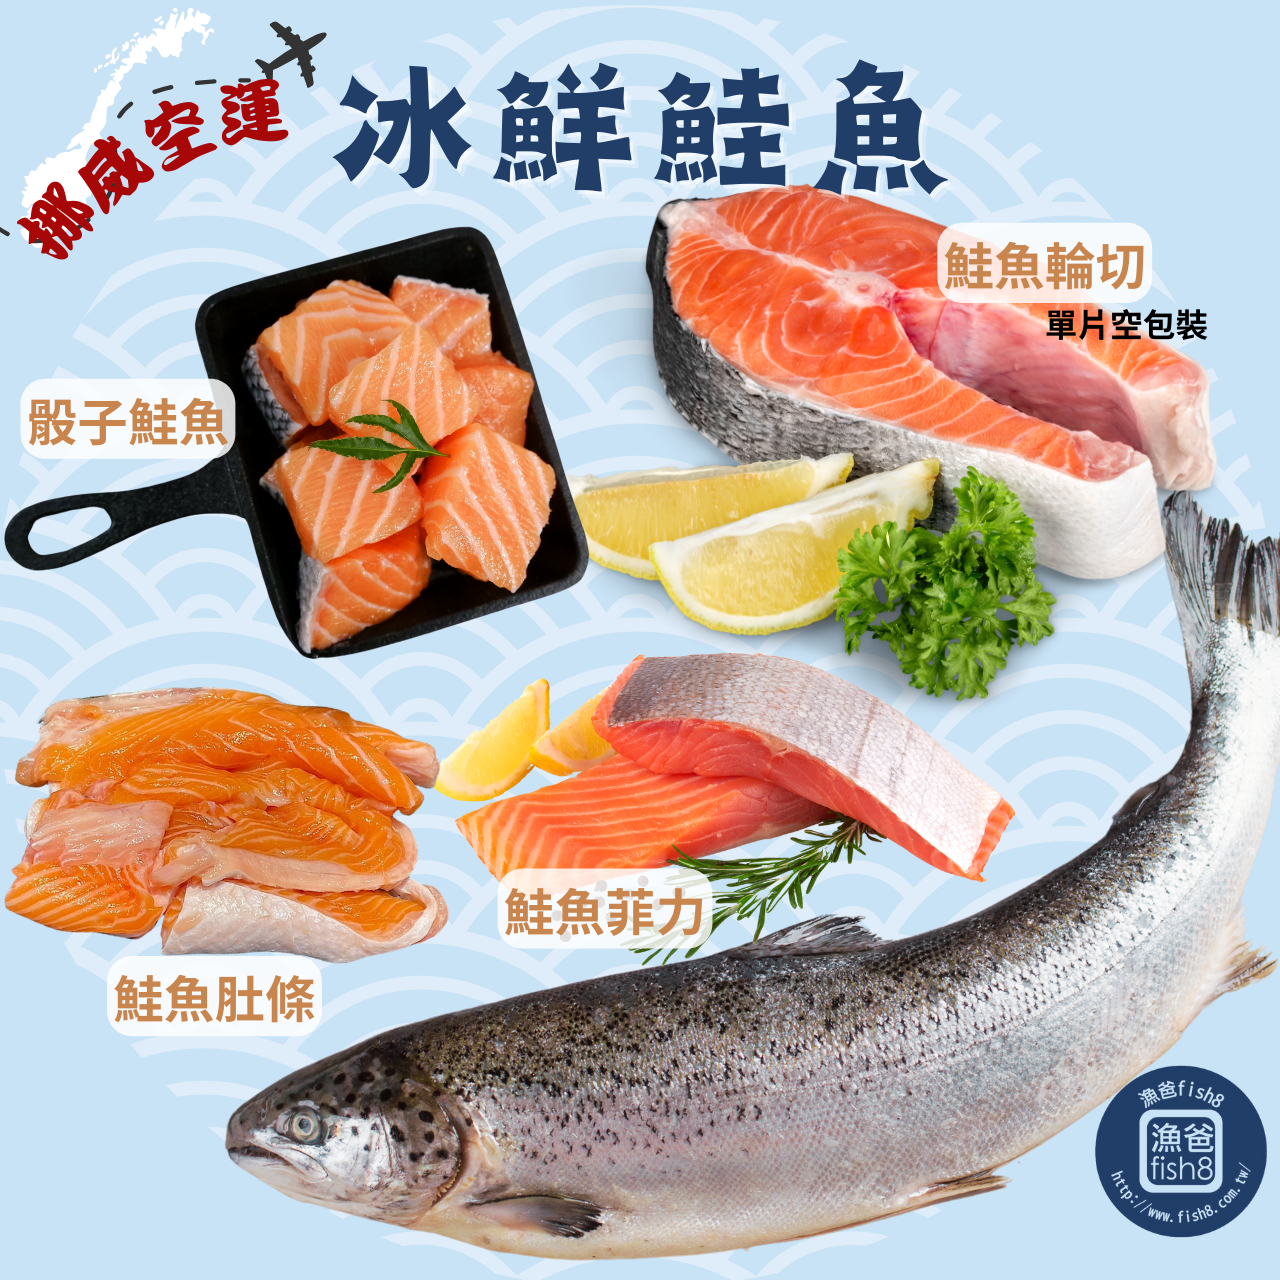 鮭魚季活動期間 3/15-4/30號購買 鮭魚品項享有88折